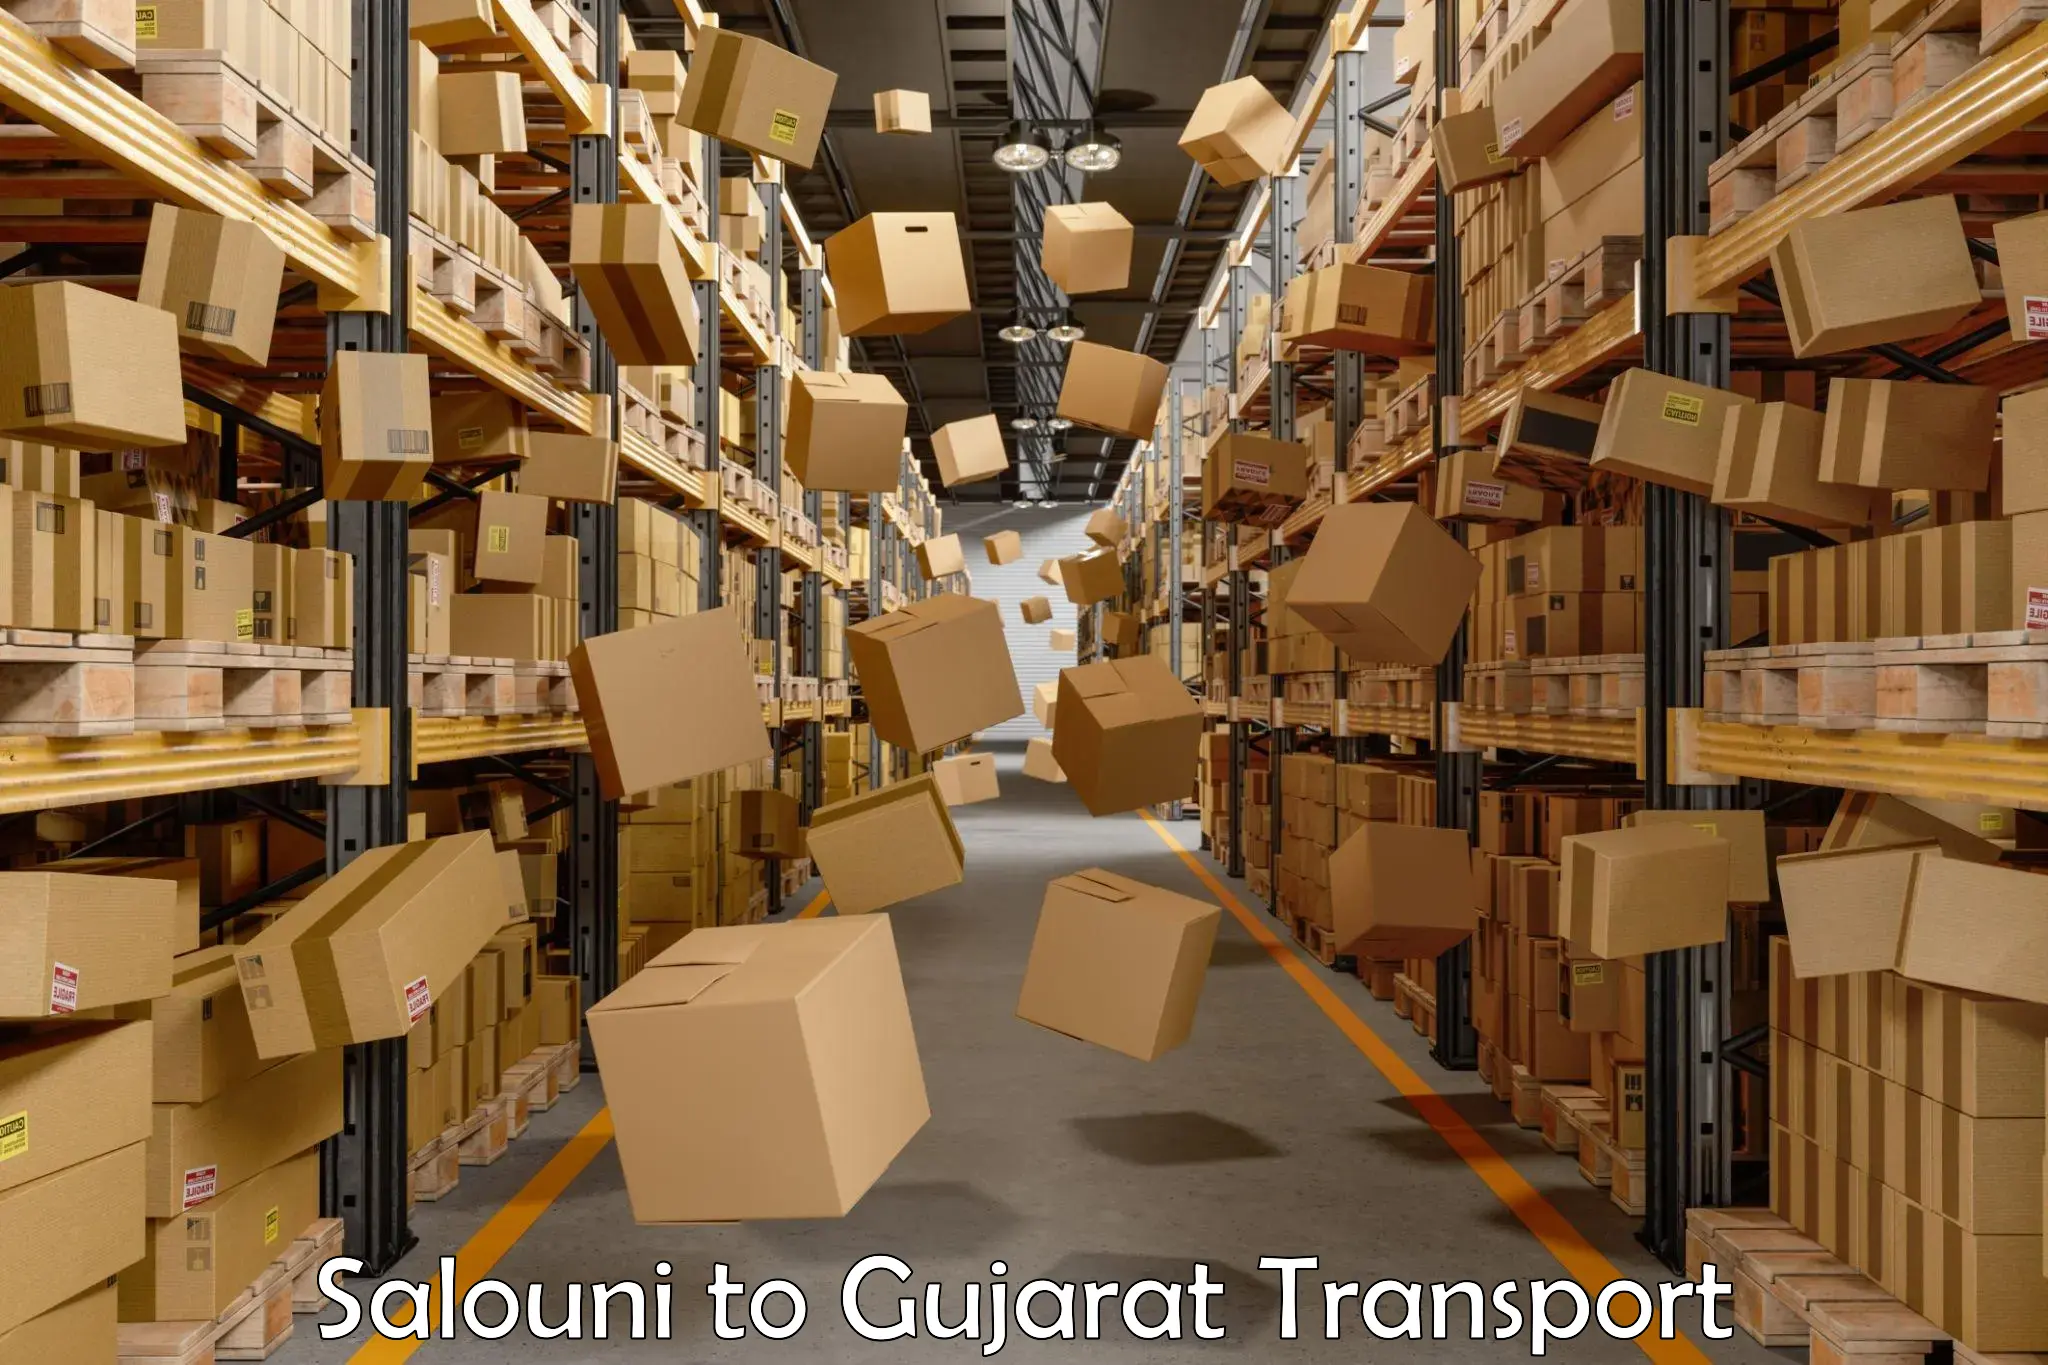 Express transport services Salouni to Narmada Gujarat